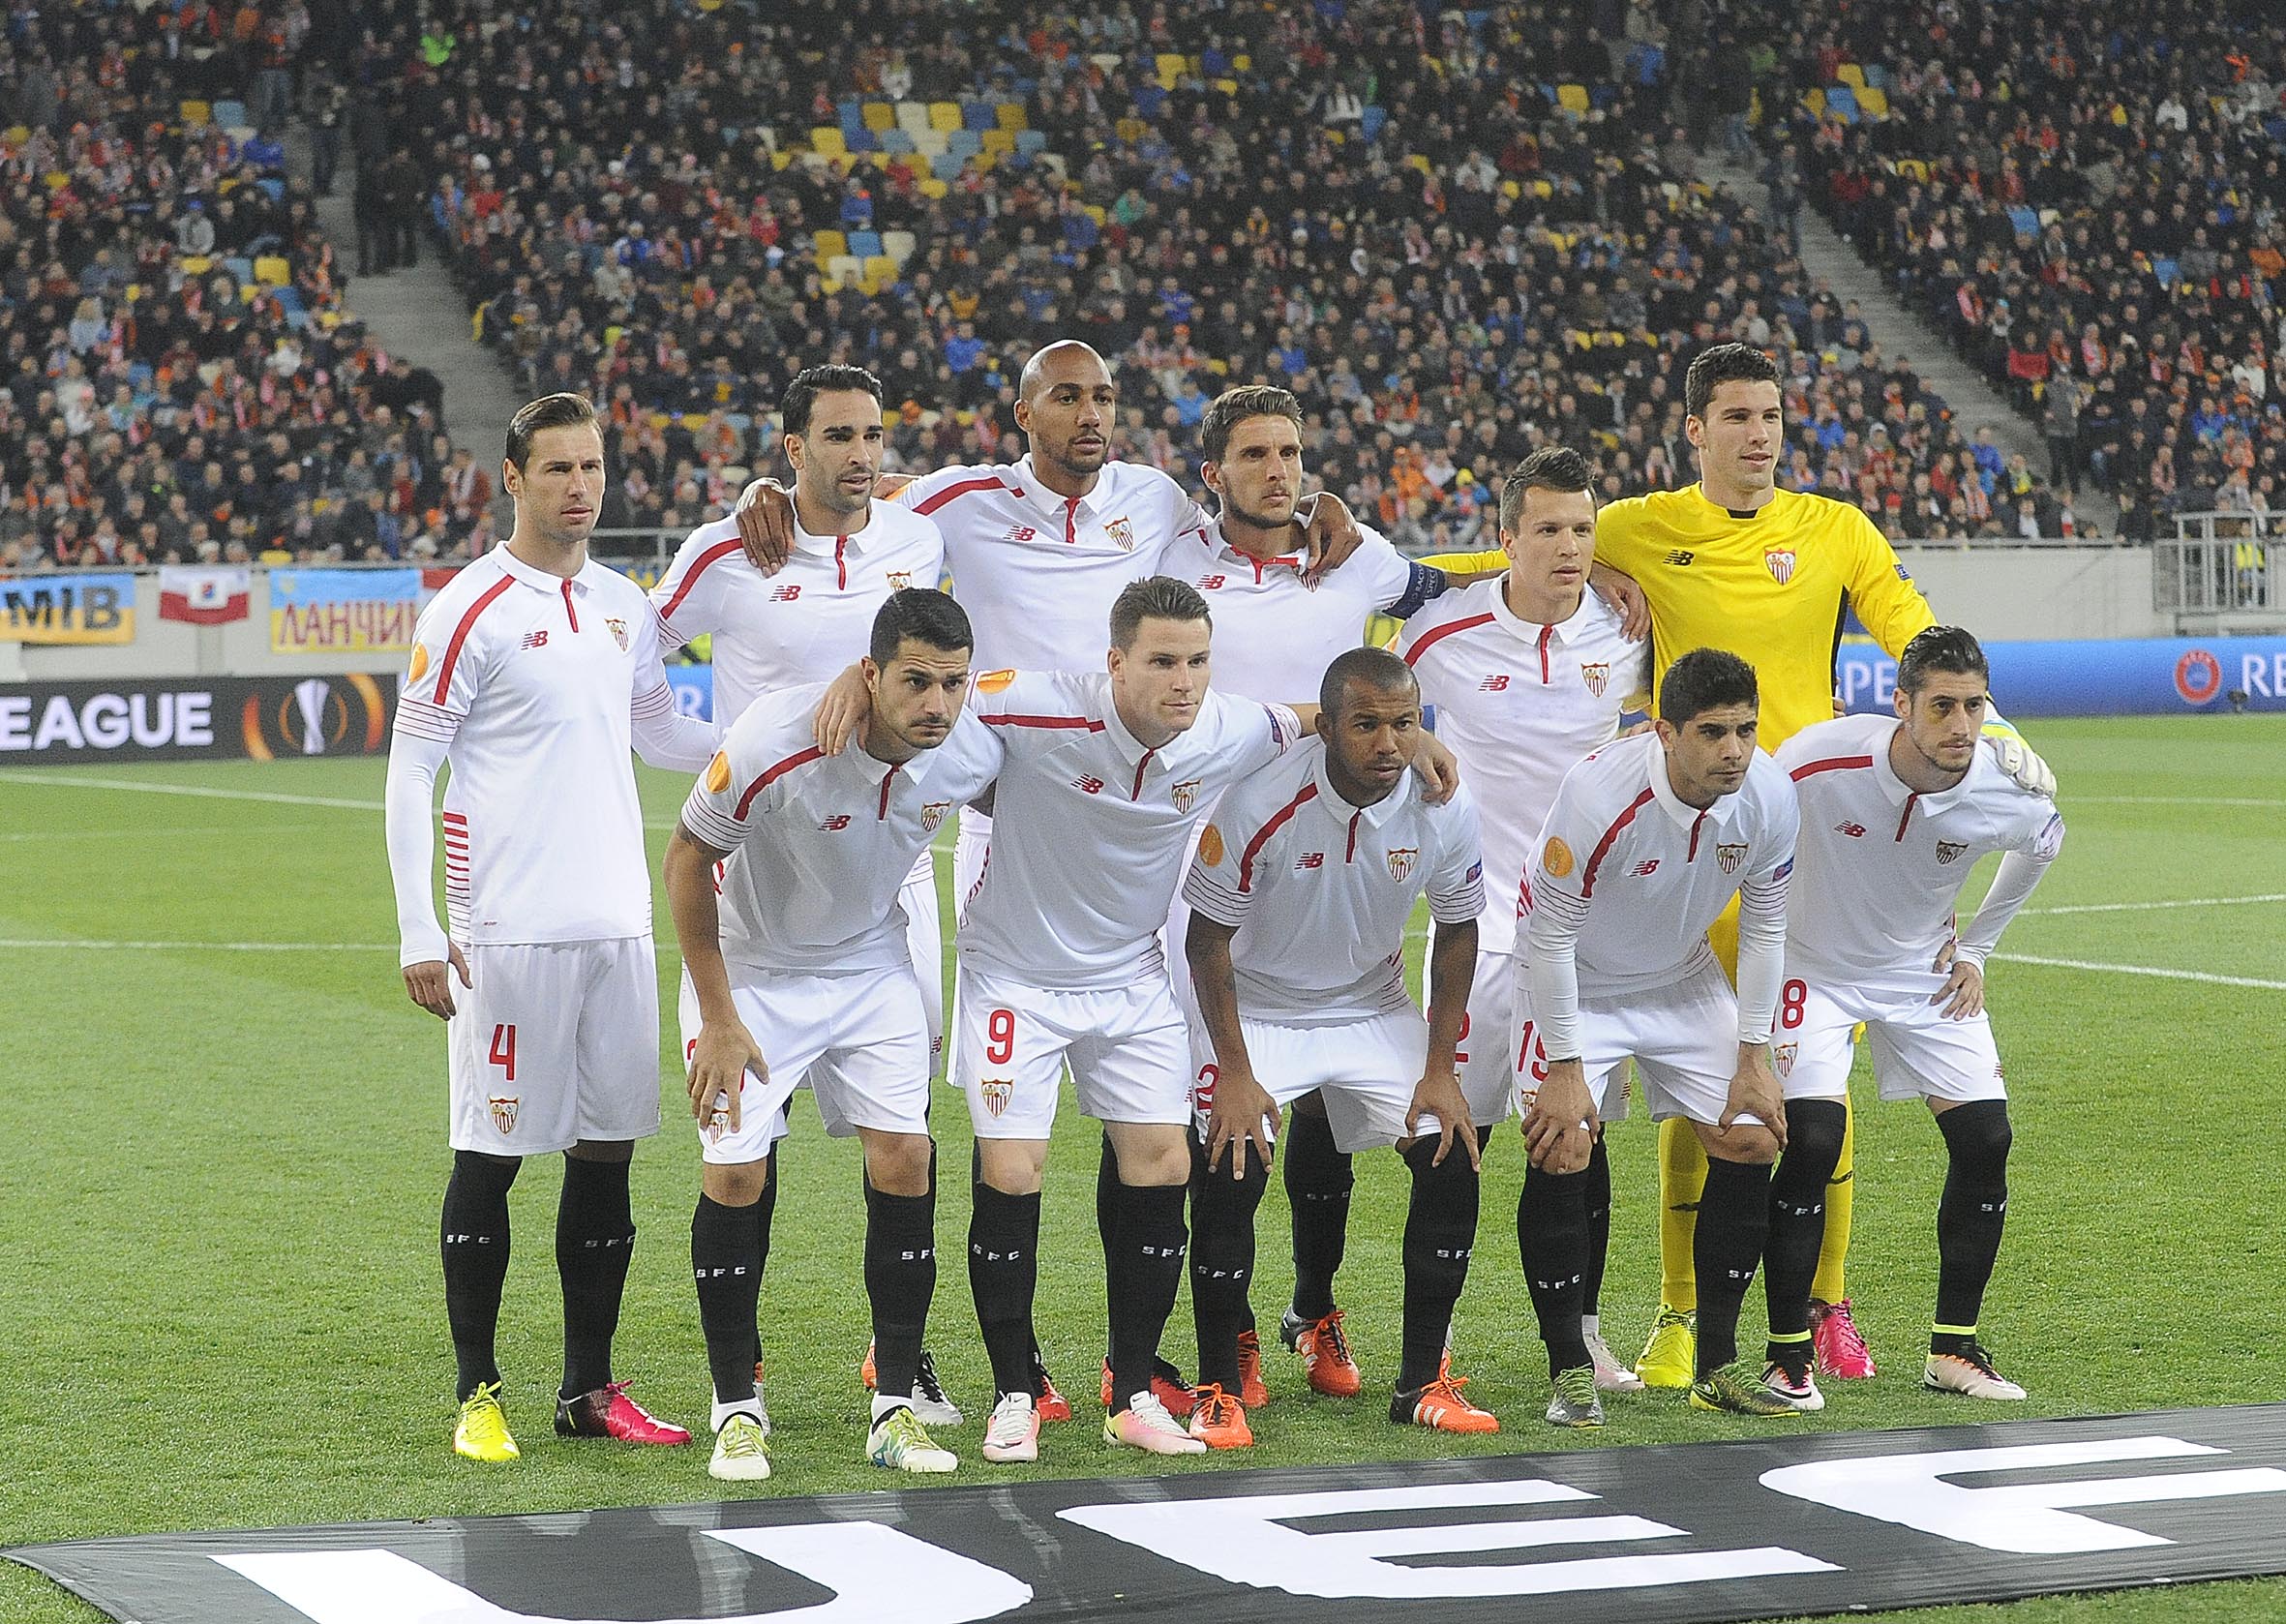 El Sevilla ante el Shakhtar en semifinales de la Europa League 15-16